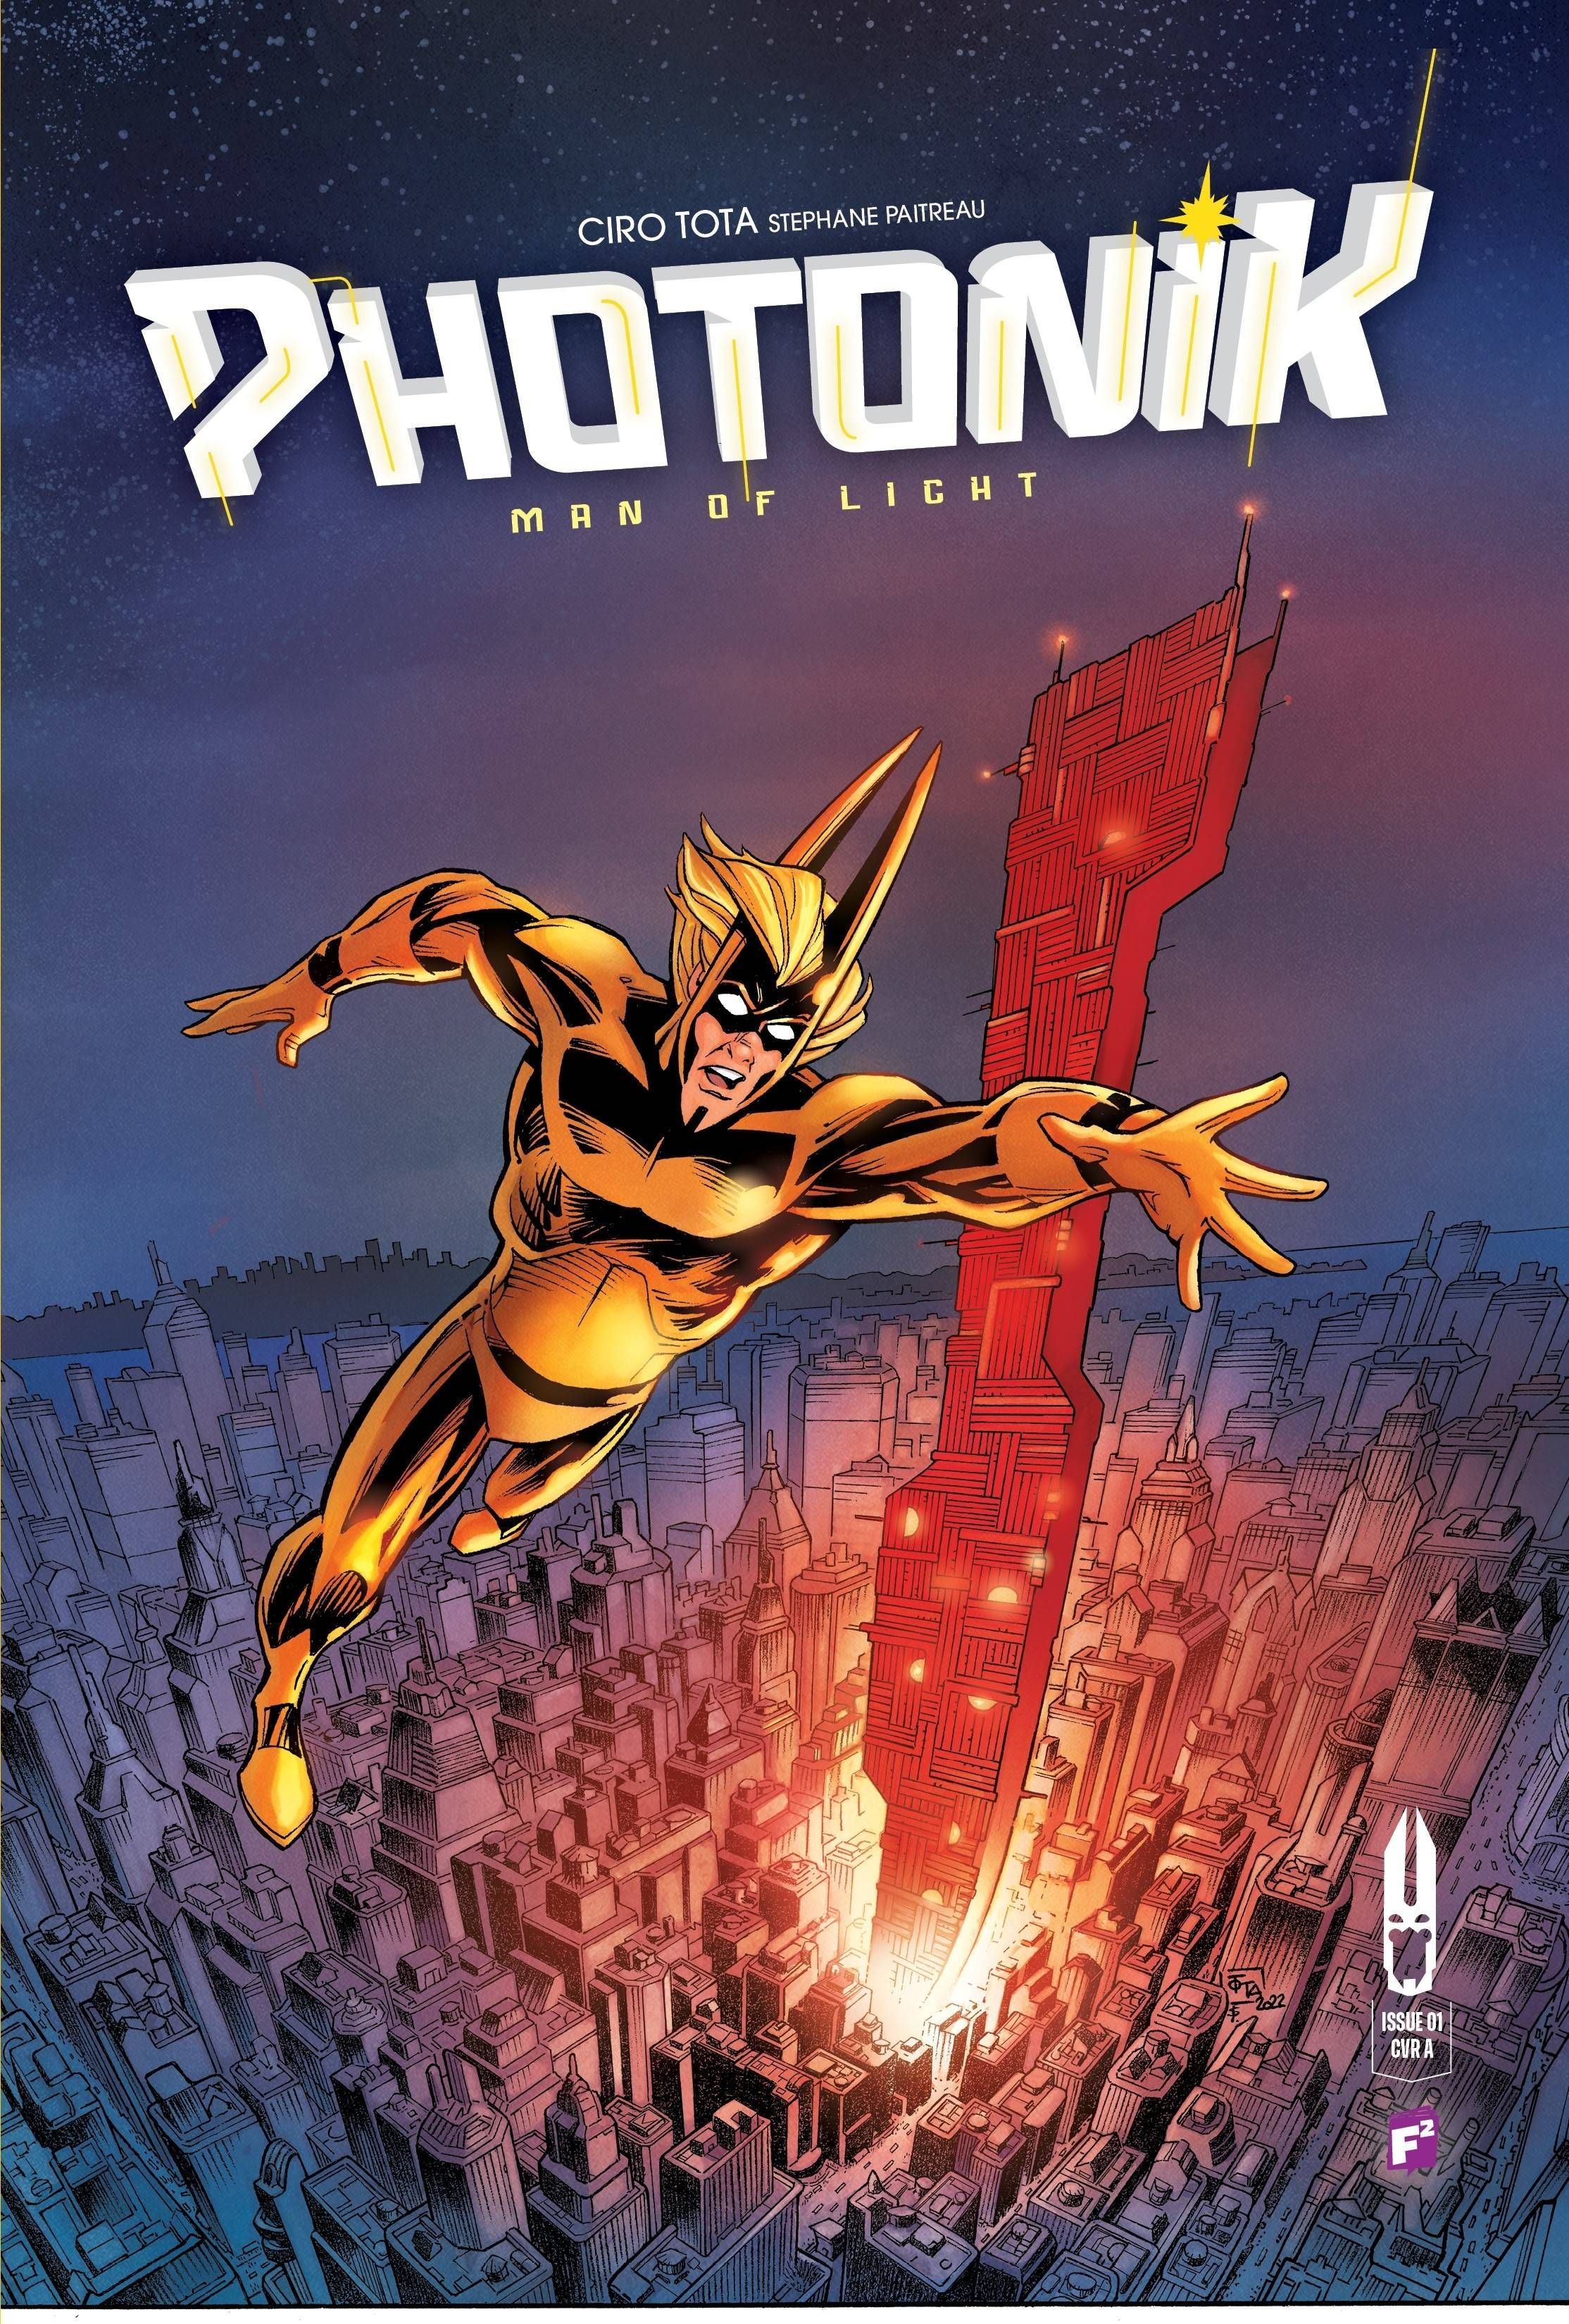 Photonik Man Of Light #1 Comic